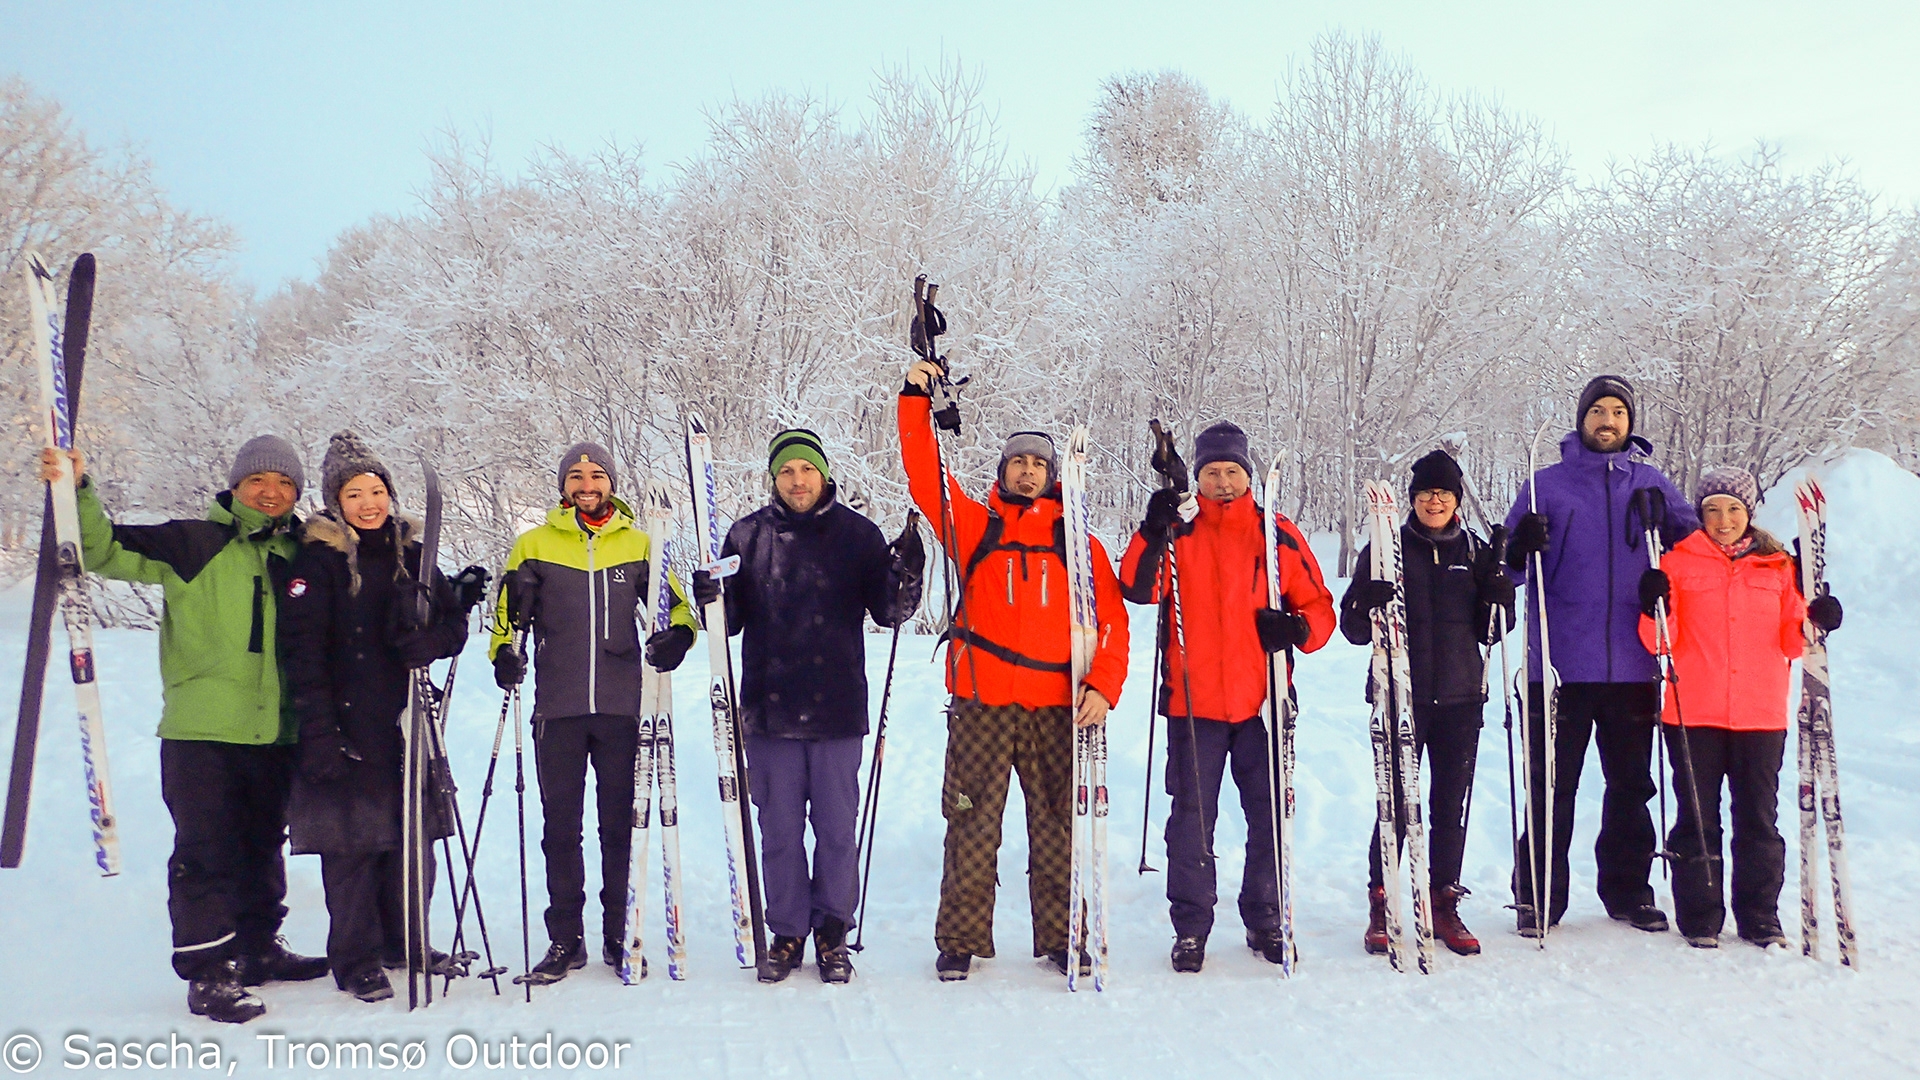 glade folk poserer foran kamera med ski